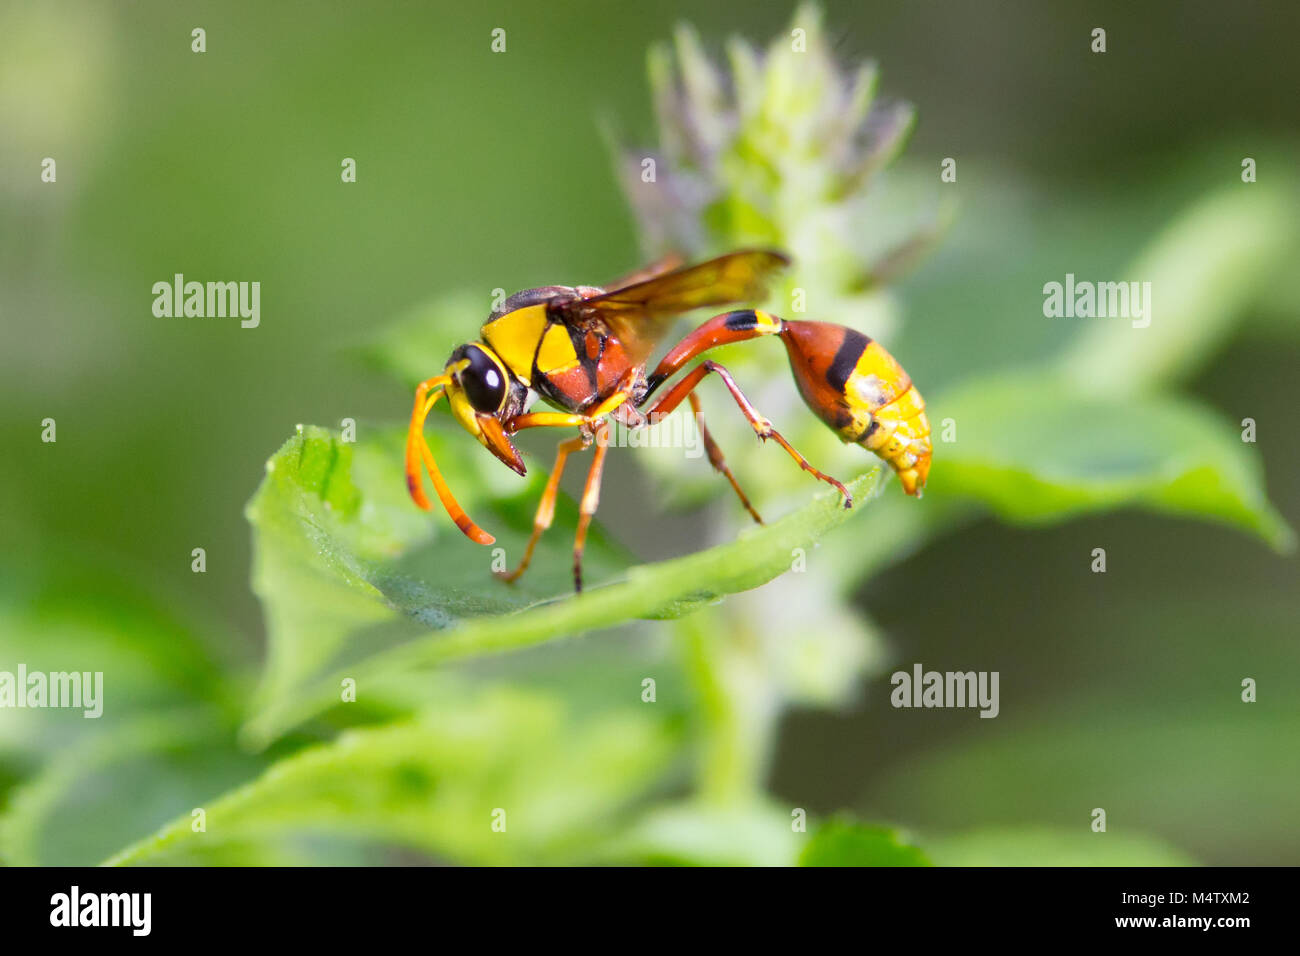 Makro Nahaufnahme von Wasp am Blatt Stockfoto